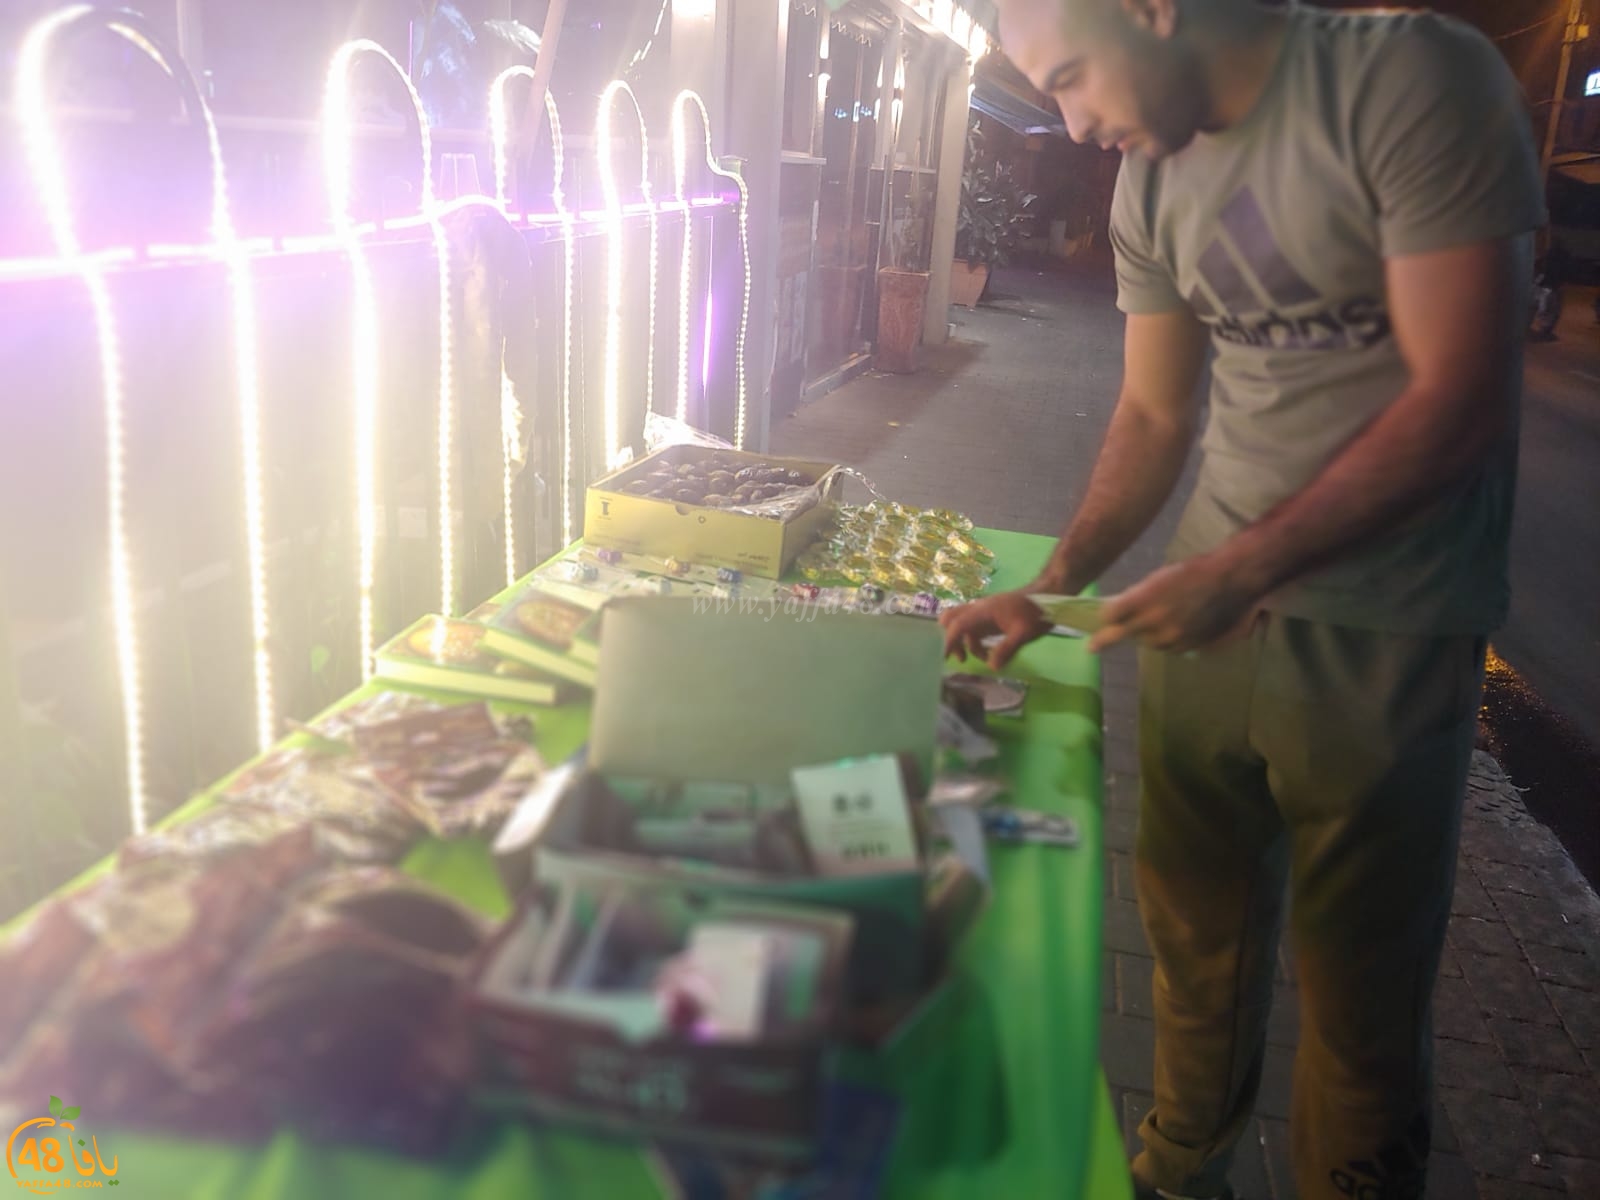  بالصور: تقديم الطعام والهدايا للمارة في شارع ييفت عن روح الشاب محمود مسلم